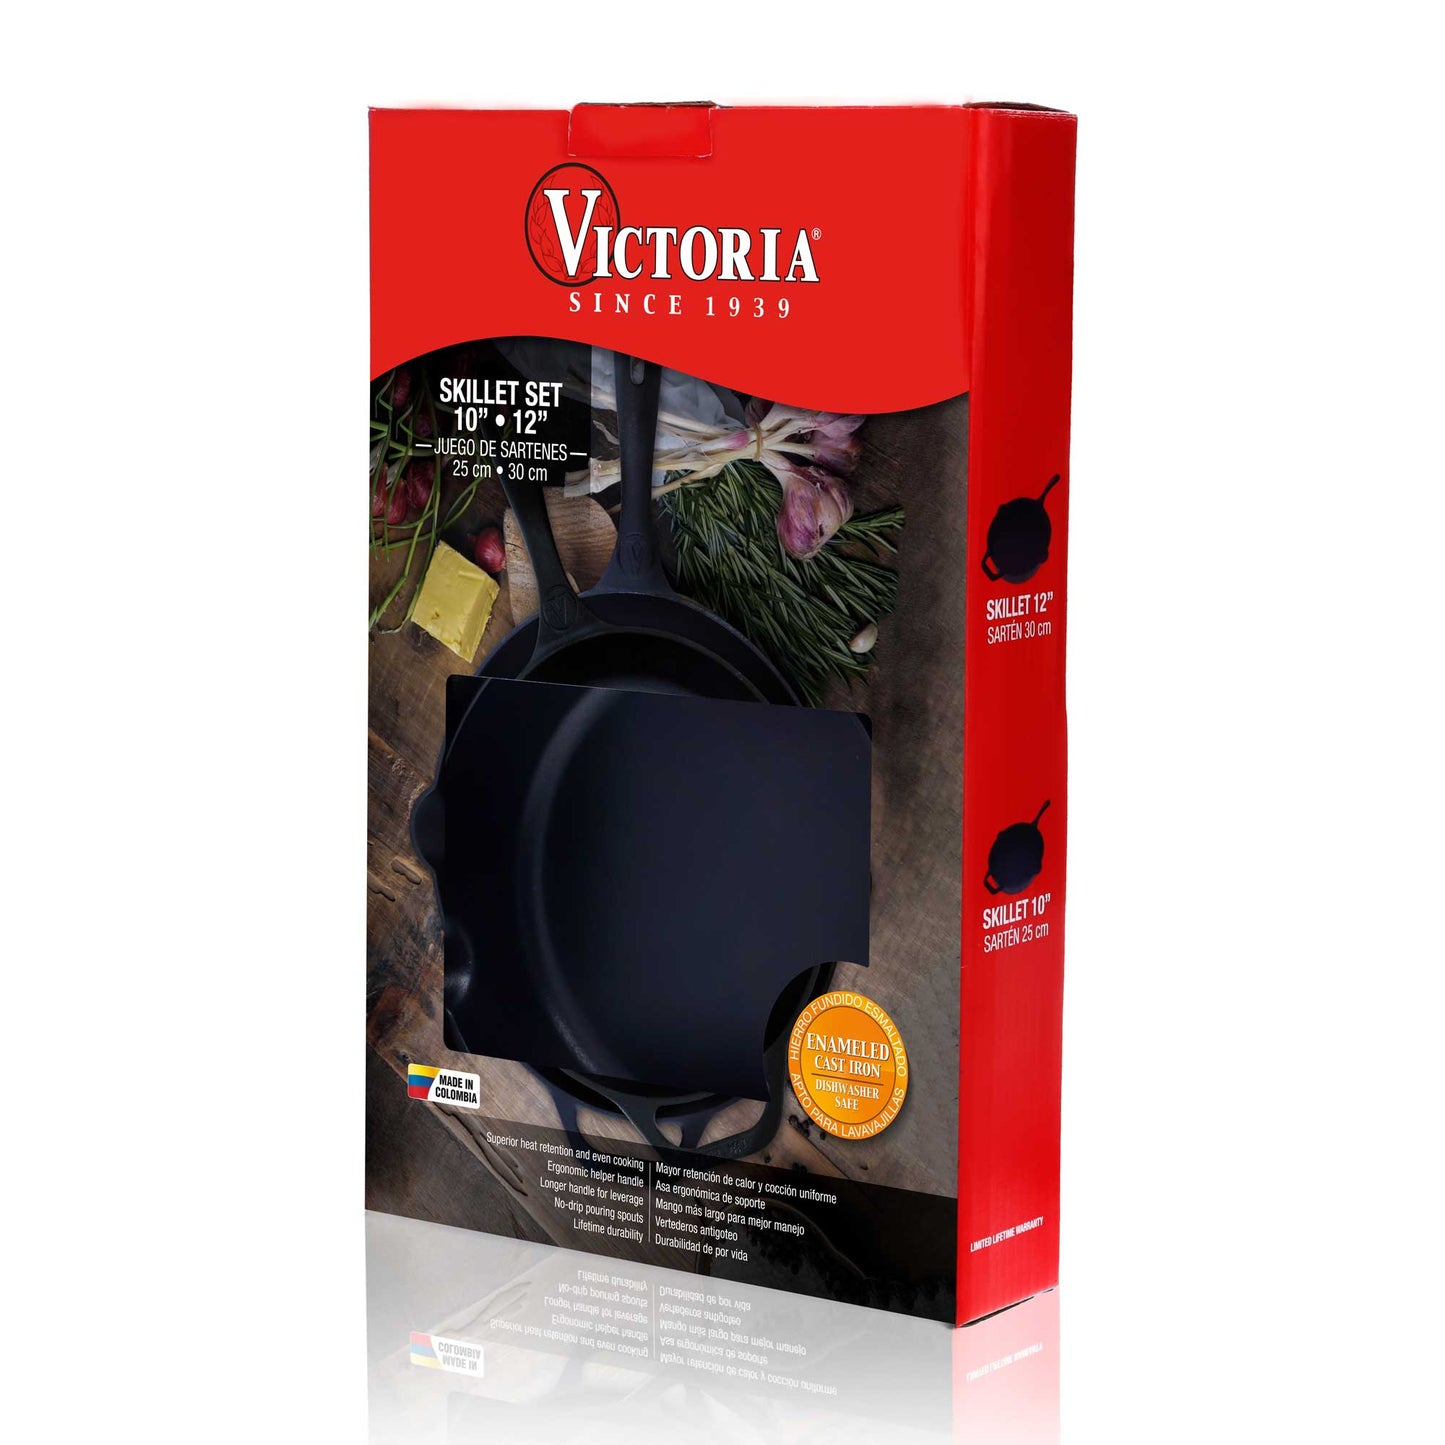 Set Sartenes 25 y 30 cm Skillet Victoria 31398 | Victoria